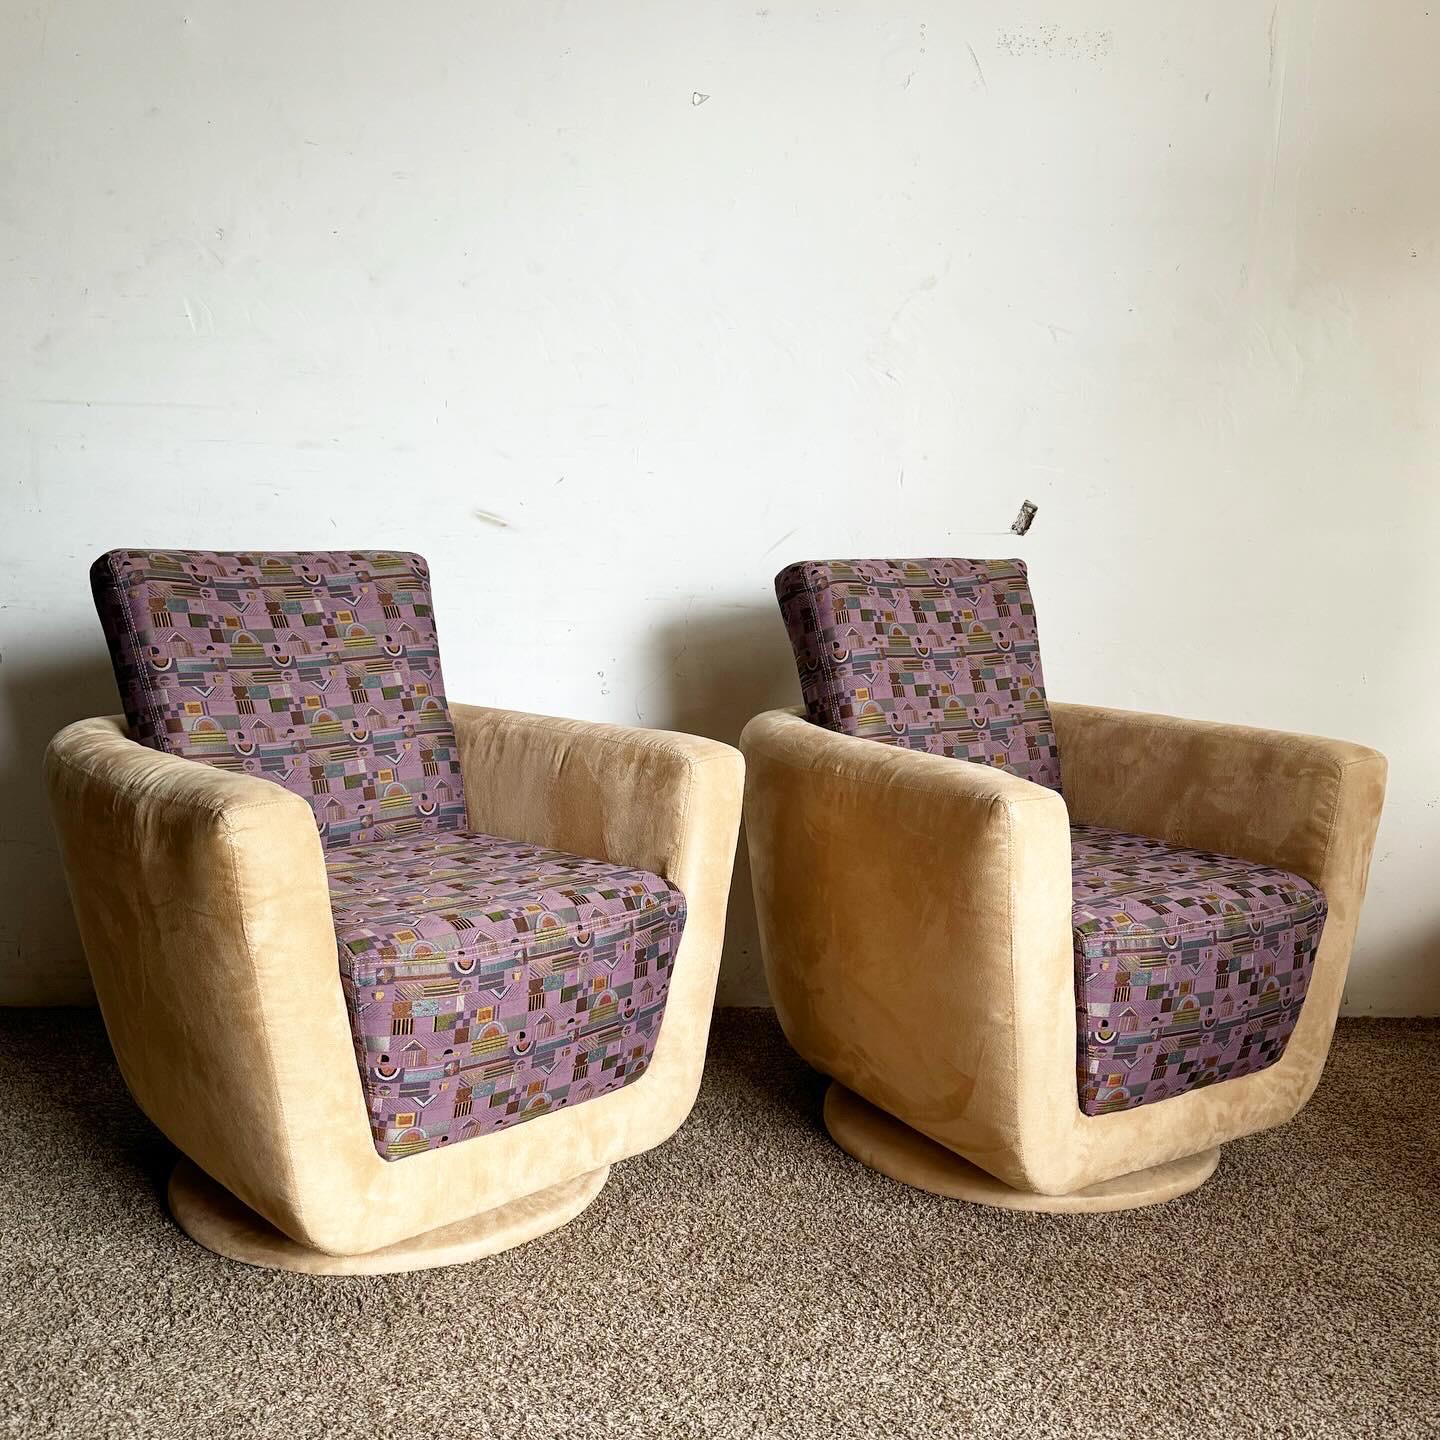 Revoyez votre espace de vie avec ces chaises longues pivotantes Postmodern, une fusion de confort et de style avec la microfibre tan et les motifs violets. Idéales pour les intérieurs modernes, elles offrent une fonctionnalité de pivotement à 360